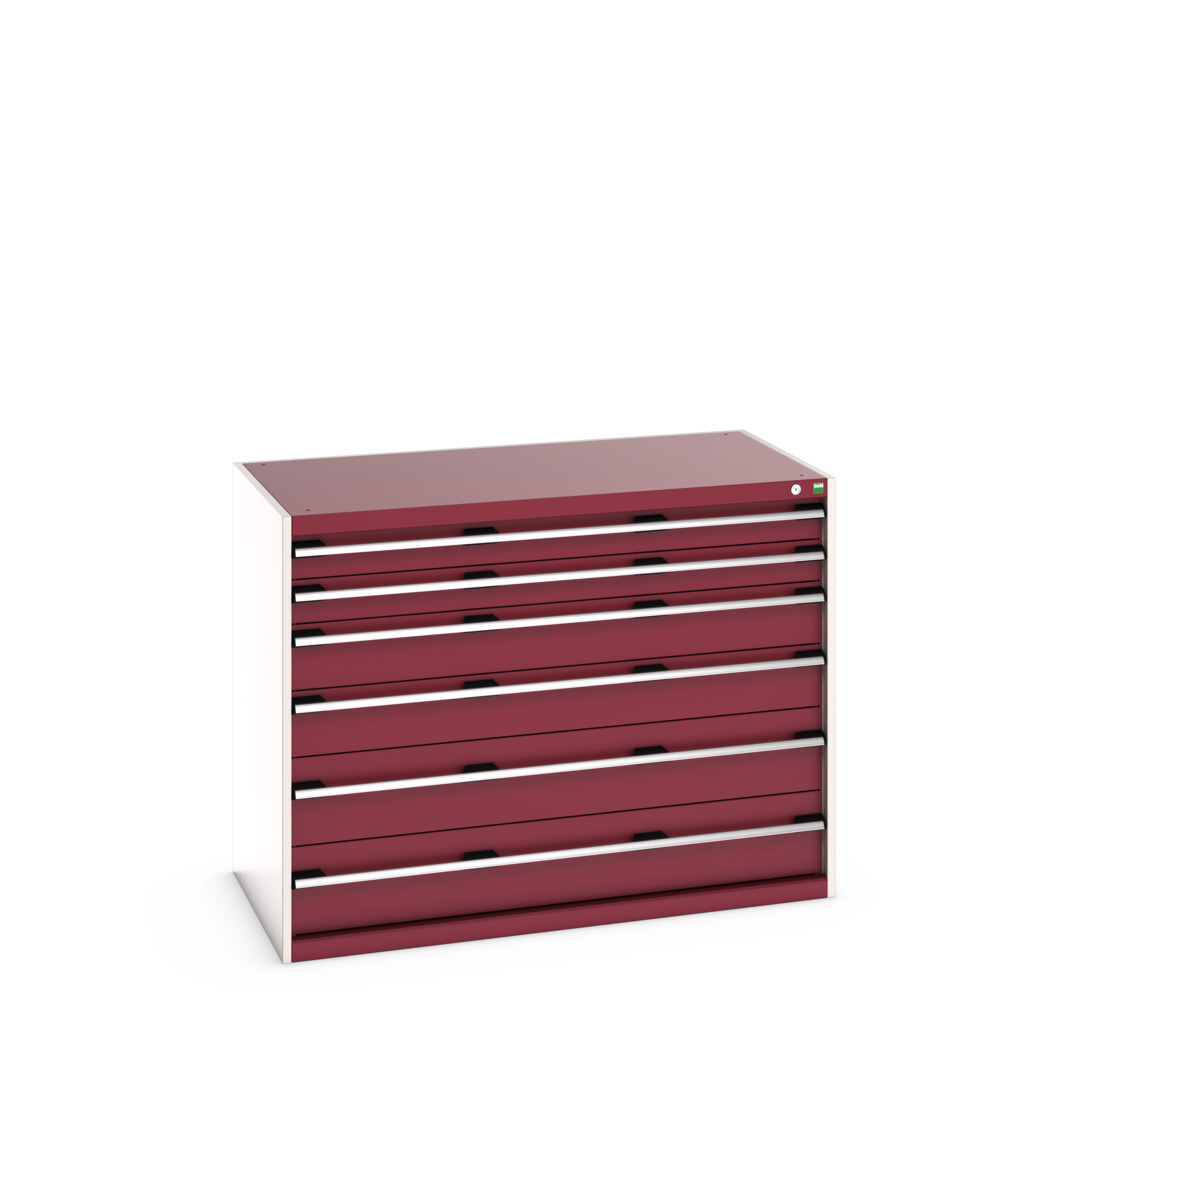 40030093.24V - cubio drawer cabinet